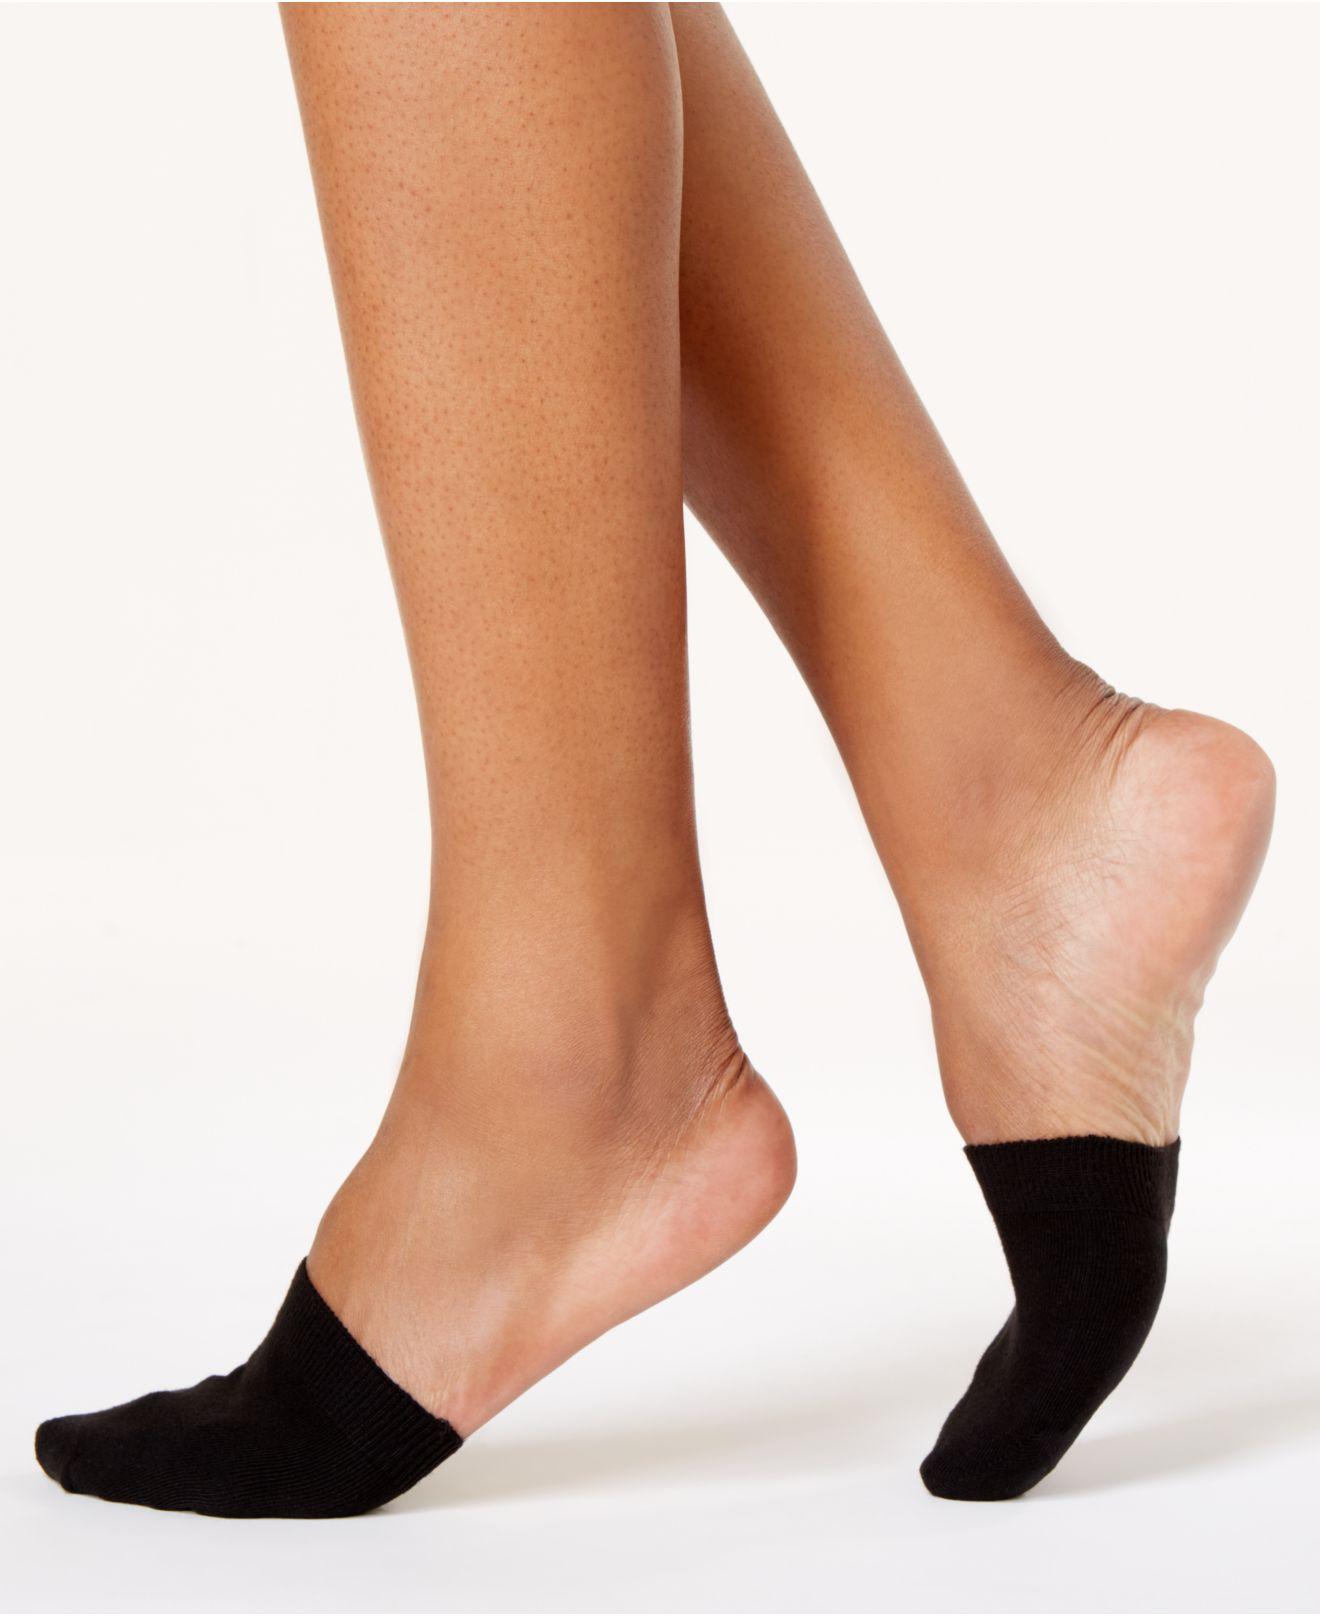 Lyst - Hue Women's Toe Topper Socks in Black